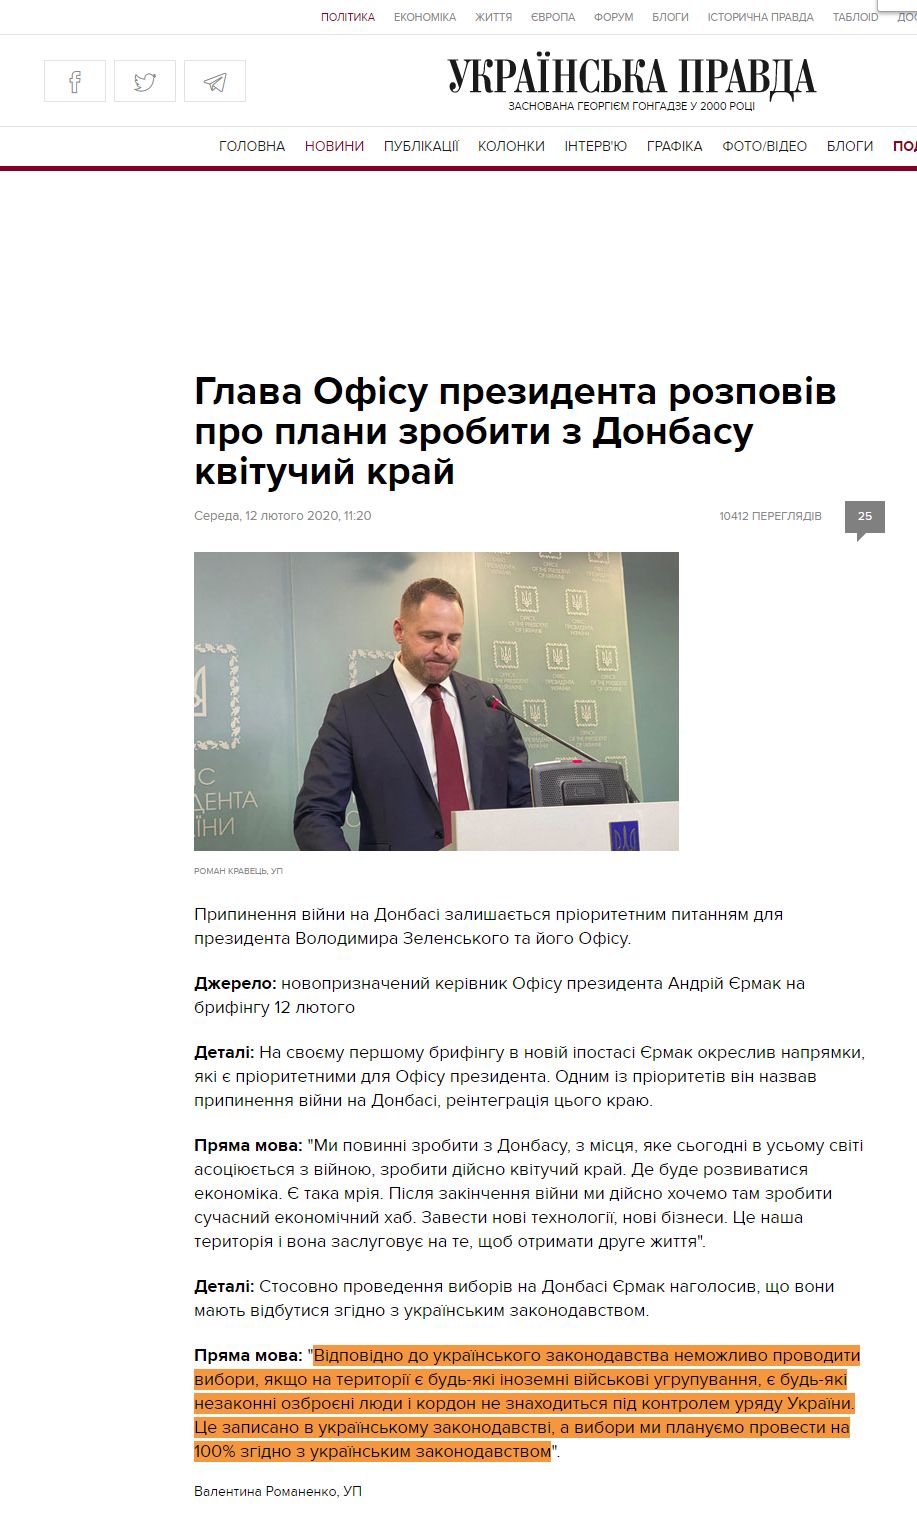 https://www.pravda.com.ua/news/2020/02/12/7240231/